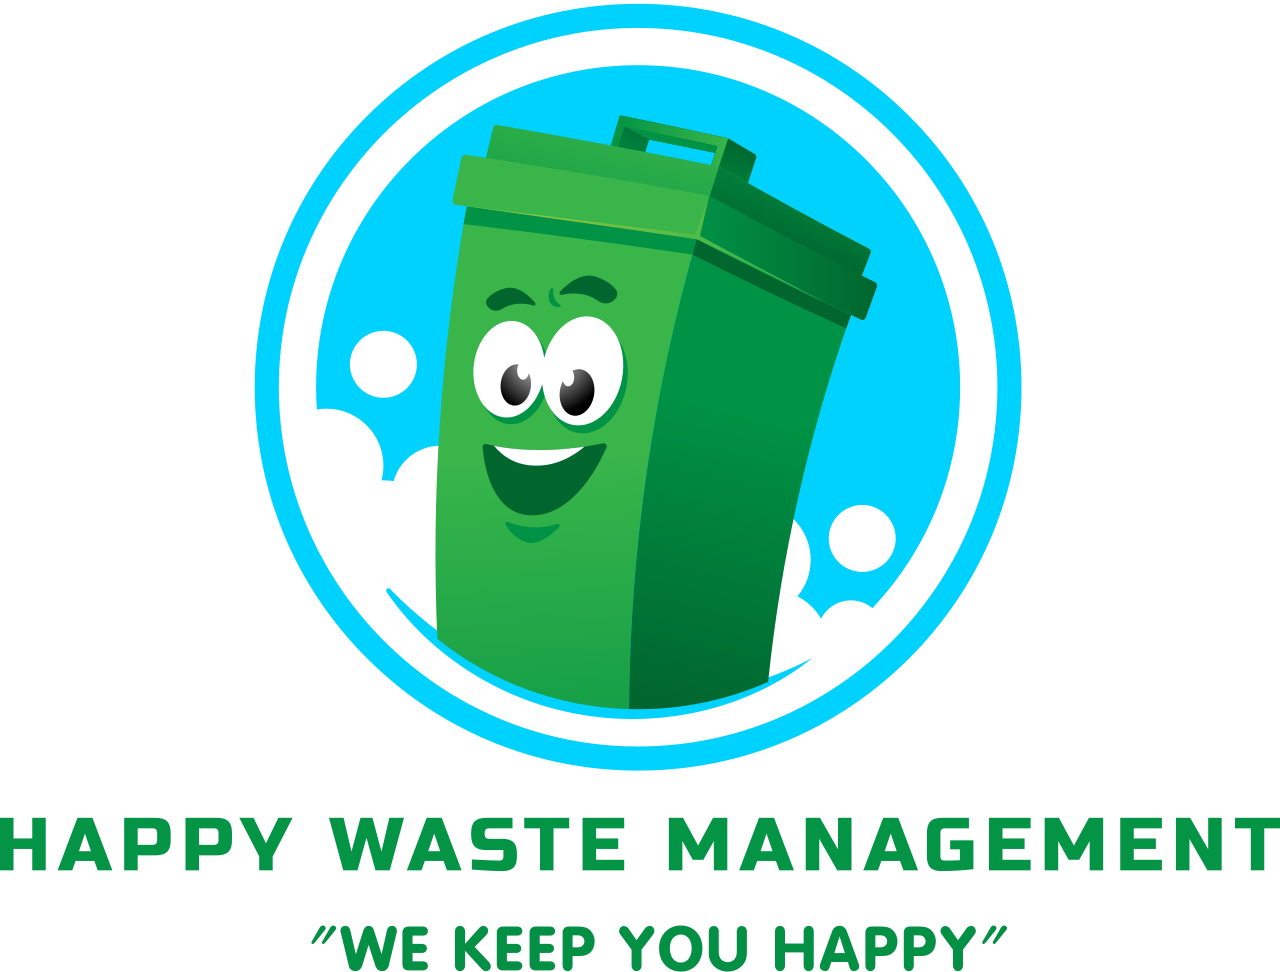 Happy Waste Management's logo